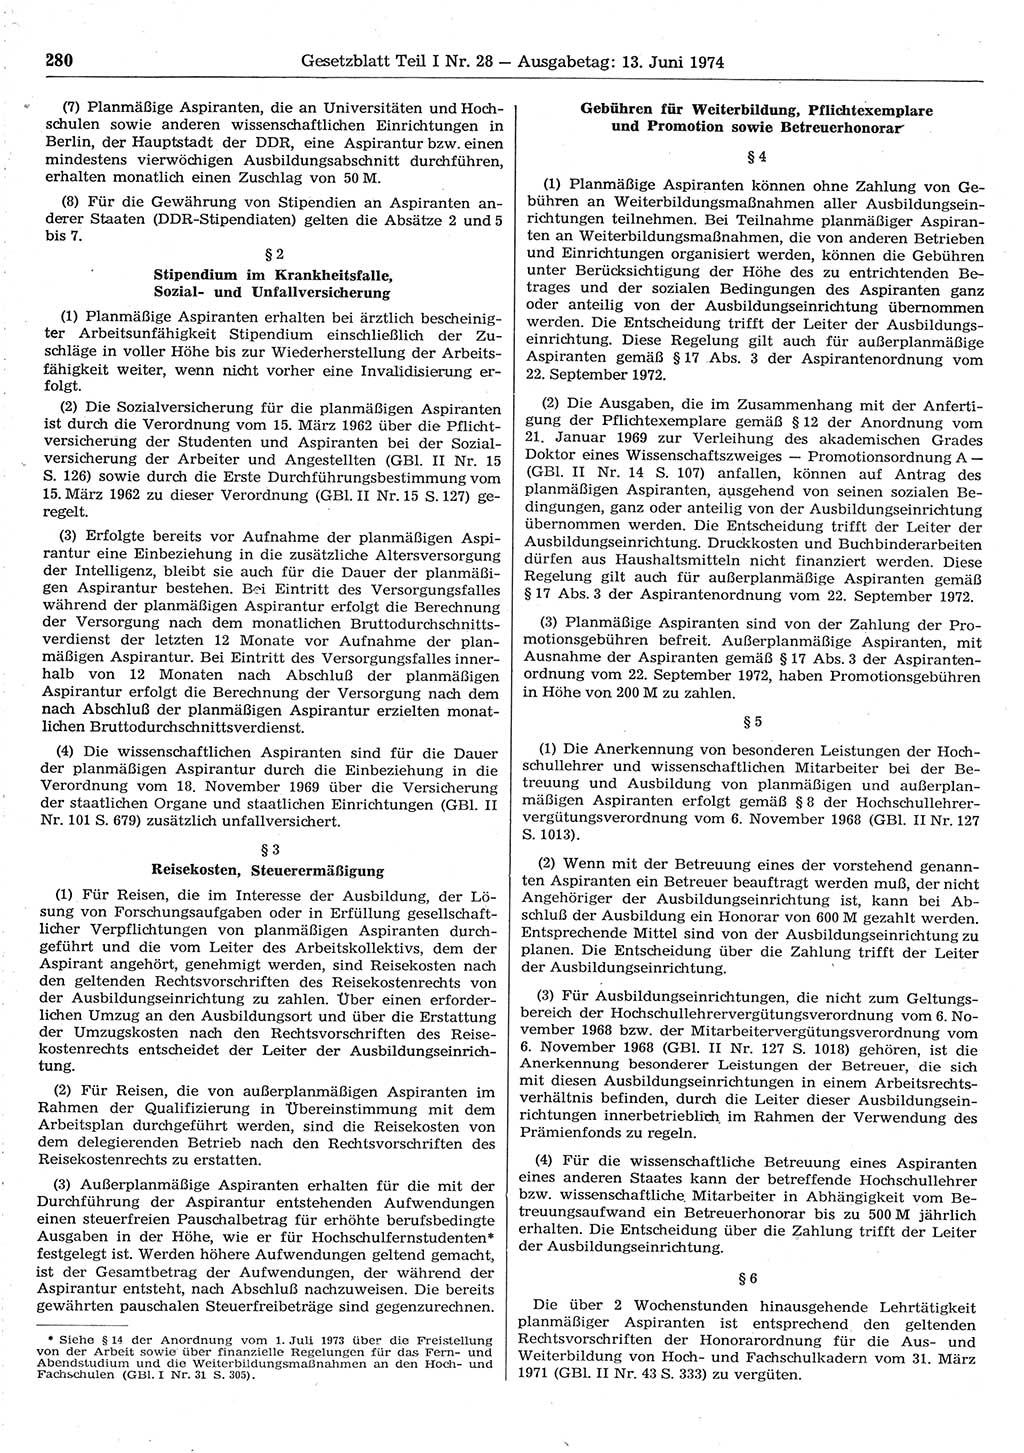 Gesetzblatt (GBl.) der Deutschen Demokratischen Republik (DDR) Teil Ⅰ 1974, Seite 280 (GBl. DDR Ⅰ 1974, S. 280)